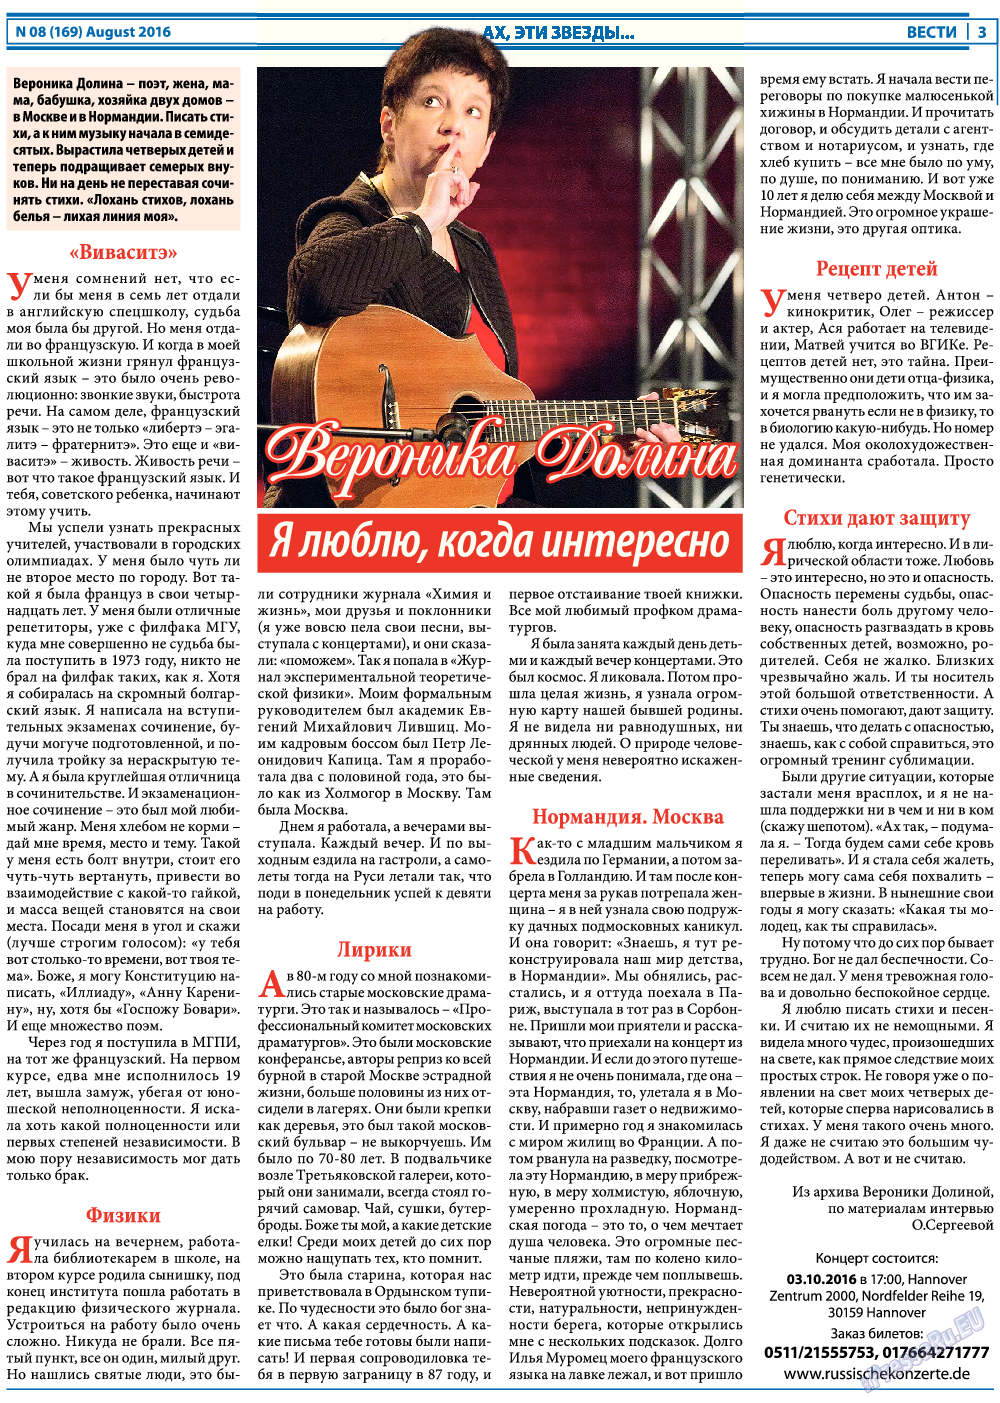 Вести, газета. 2016 №8 стр.3